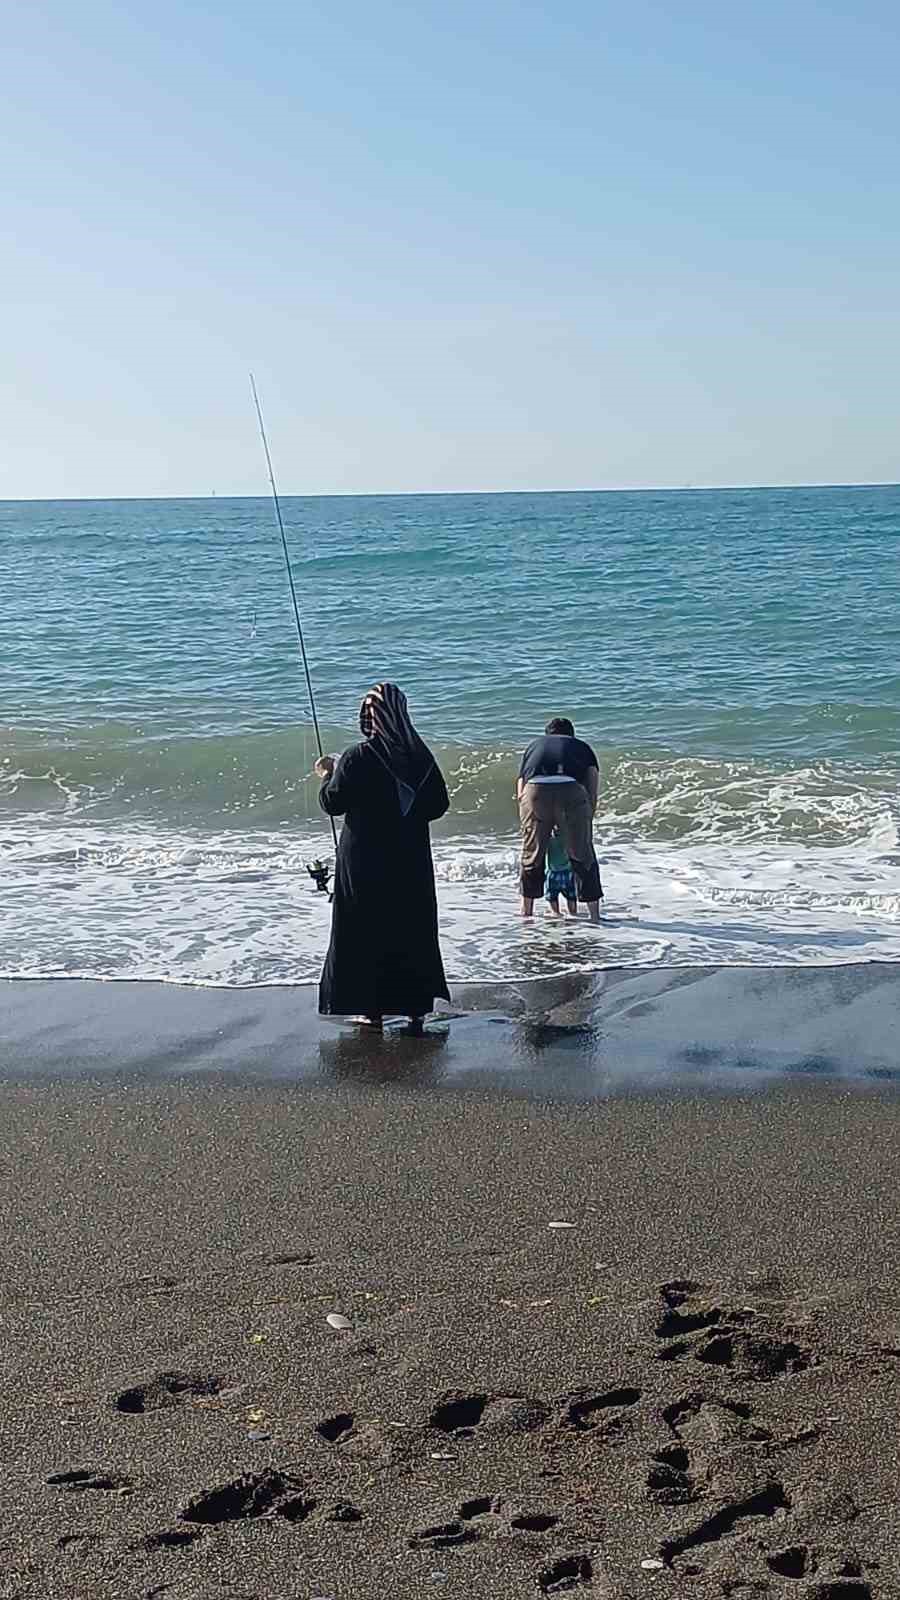 Karadeniz’de denize girmek yasaklandı, sahiller balıkçılara kaldı